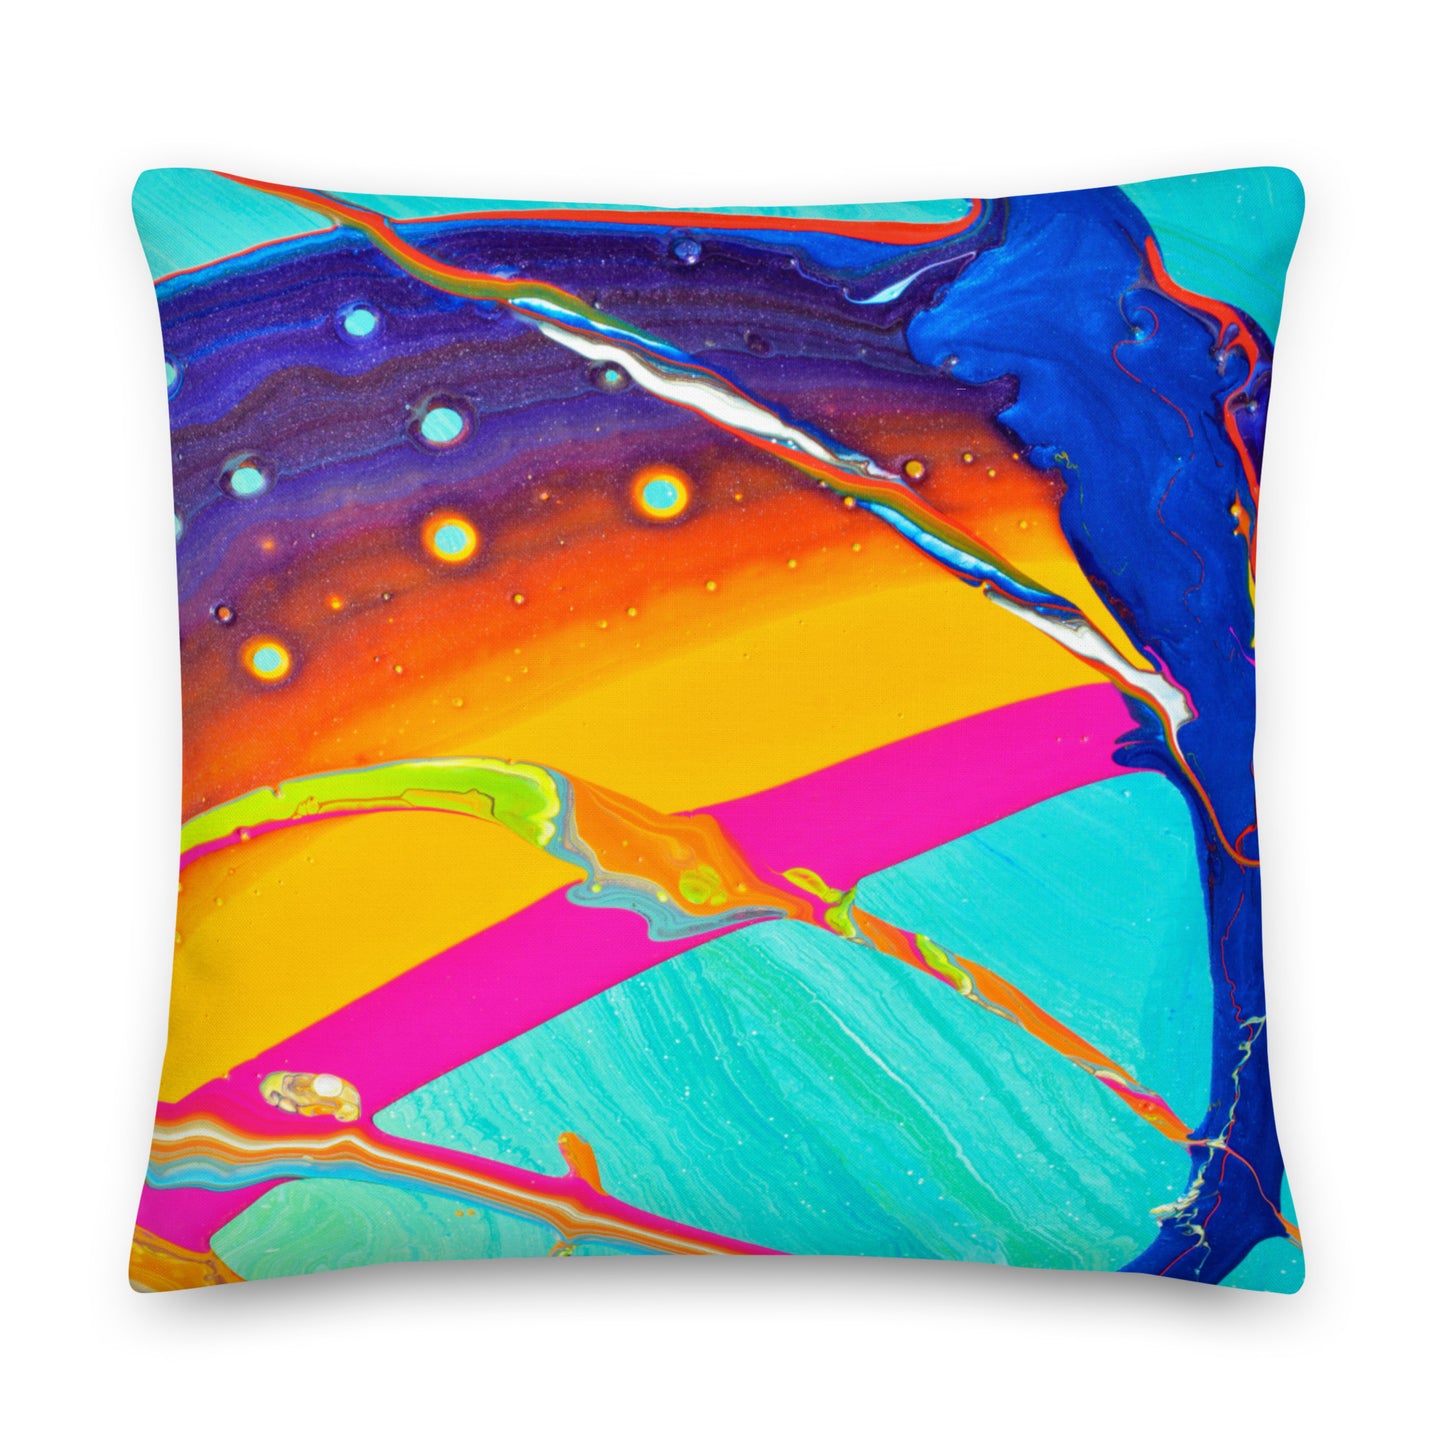 Premium Pillow - Rainbow Design